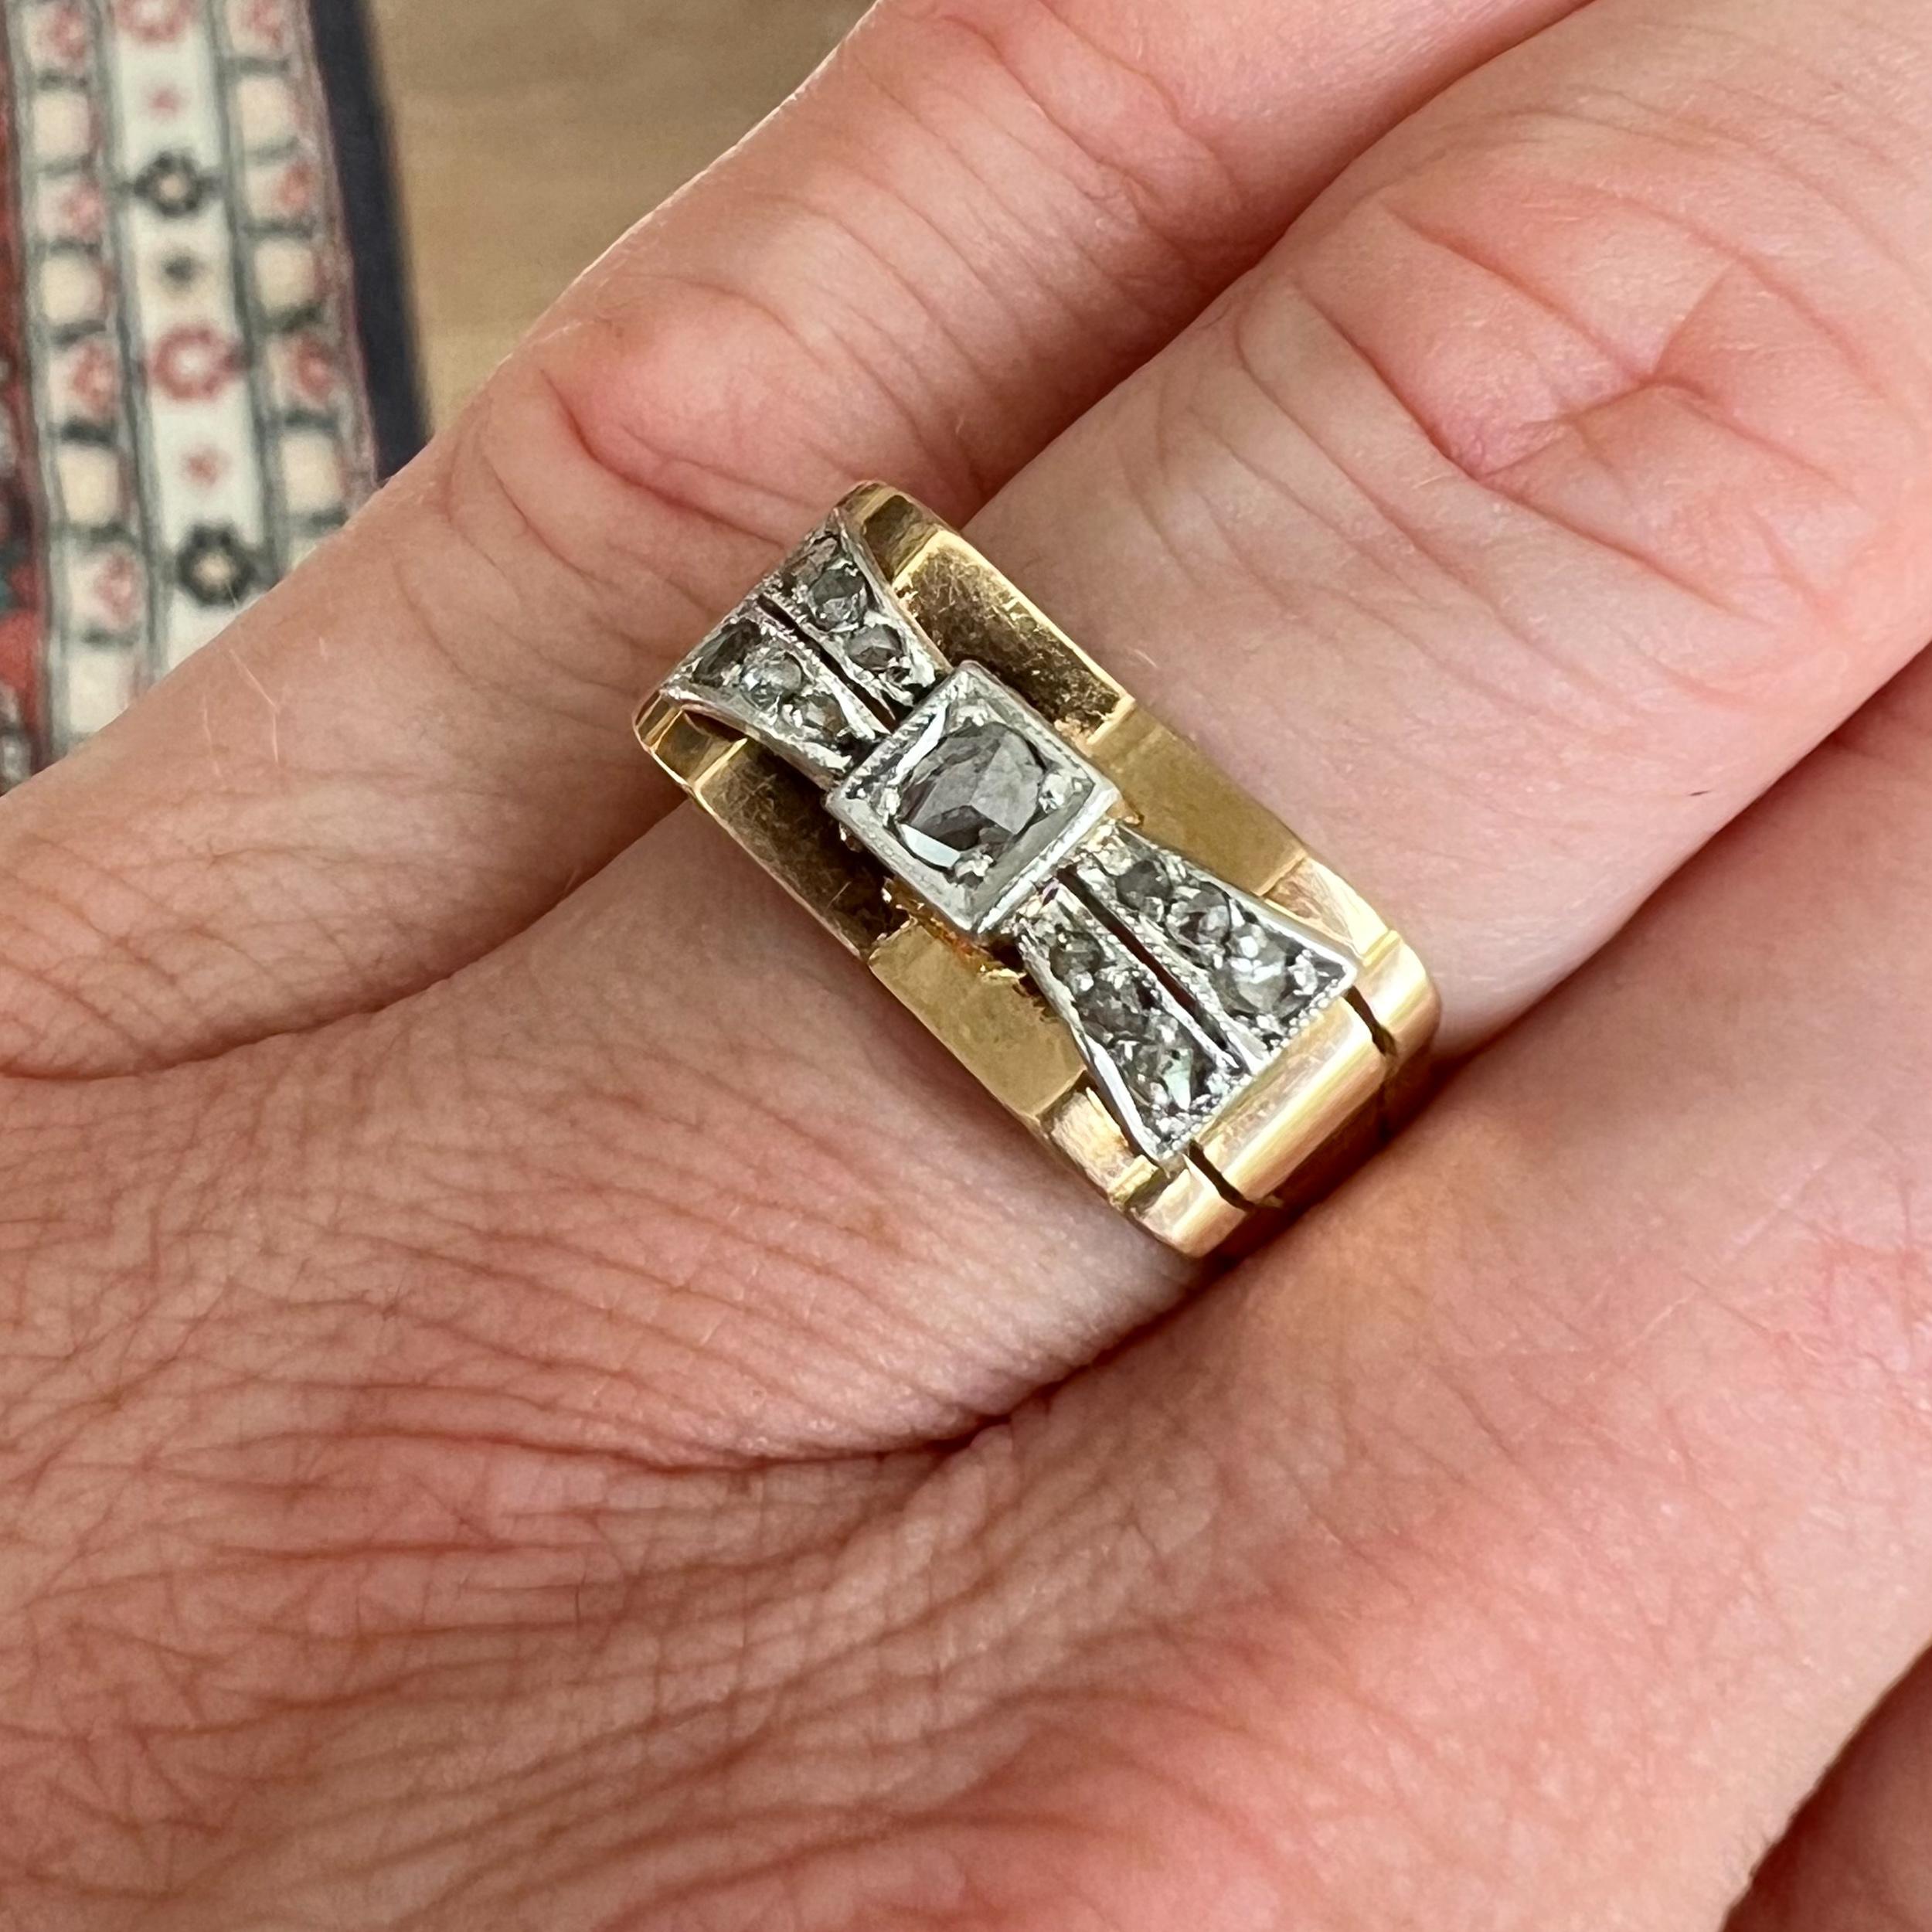 Ein prächtiger Ring aus 18 Karat Gold und Platin mit einem Diamanten im Altschliff. Der Ring stammt aus den 1930er Jahren und ist mit schönen klaren Diamanten im Altschliff in einer Platinschleifenfassung besetzt. Die Hauptfassung des Rings ist aus